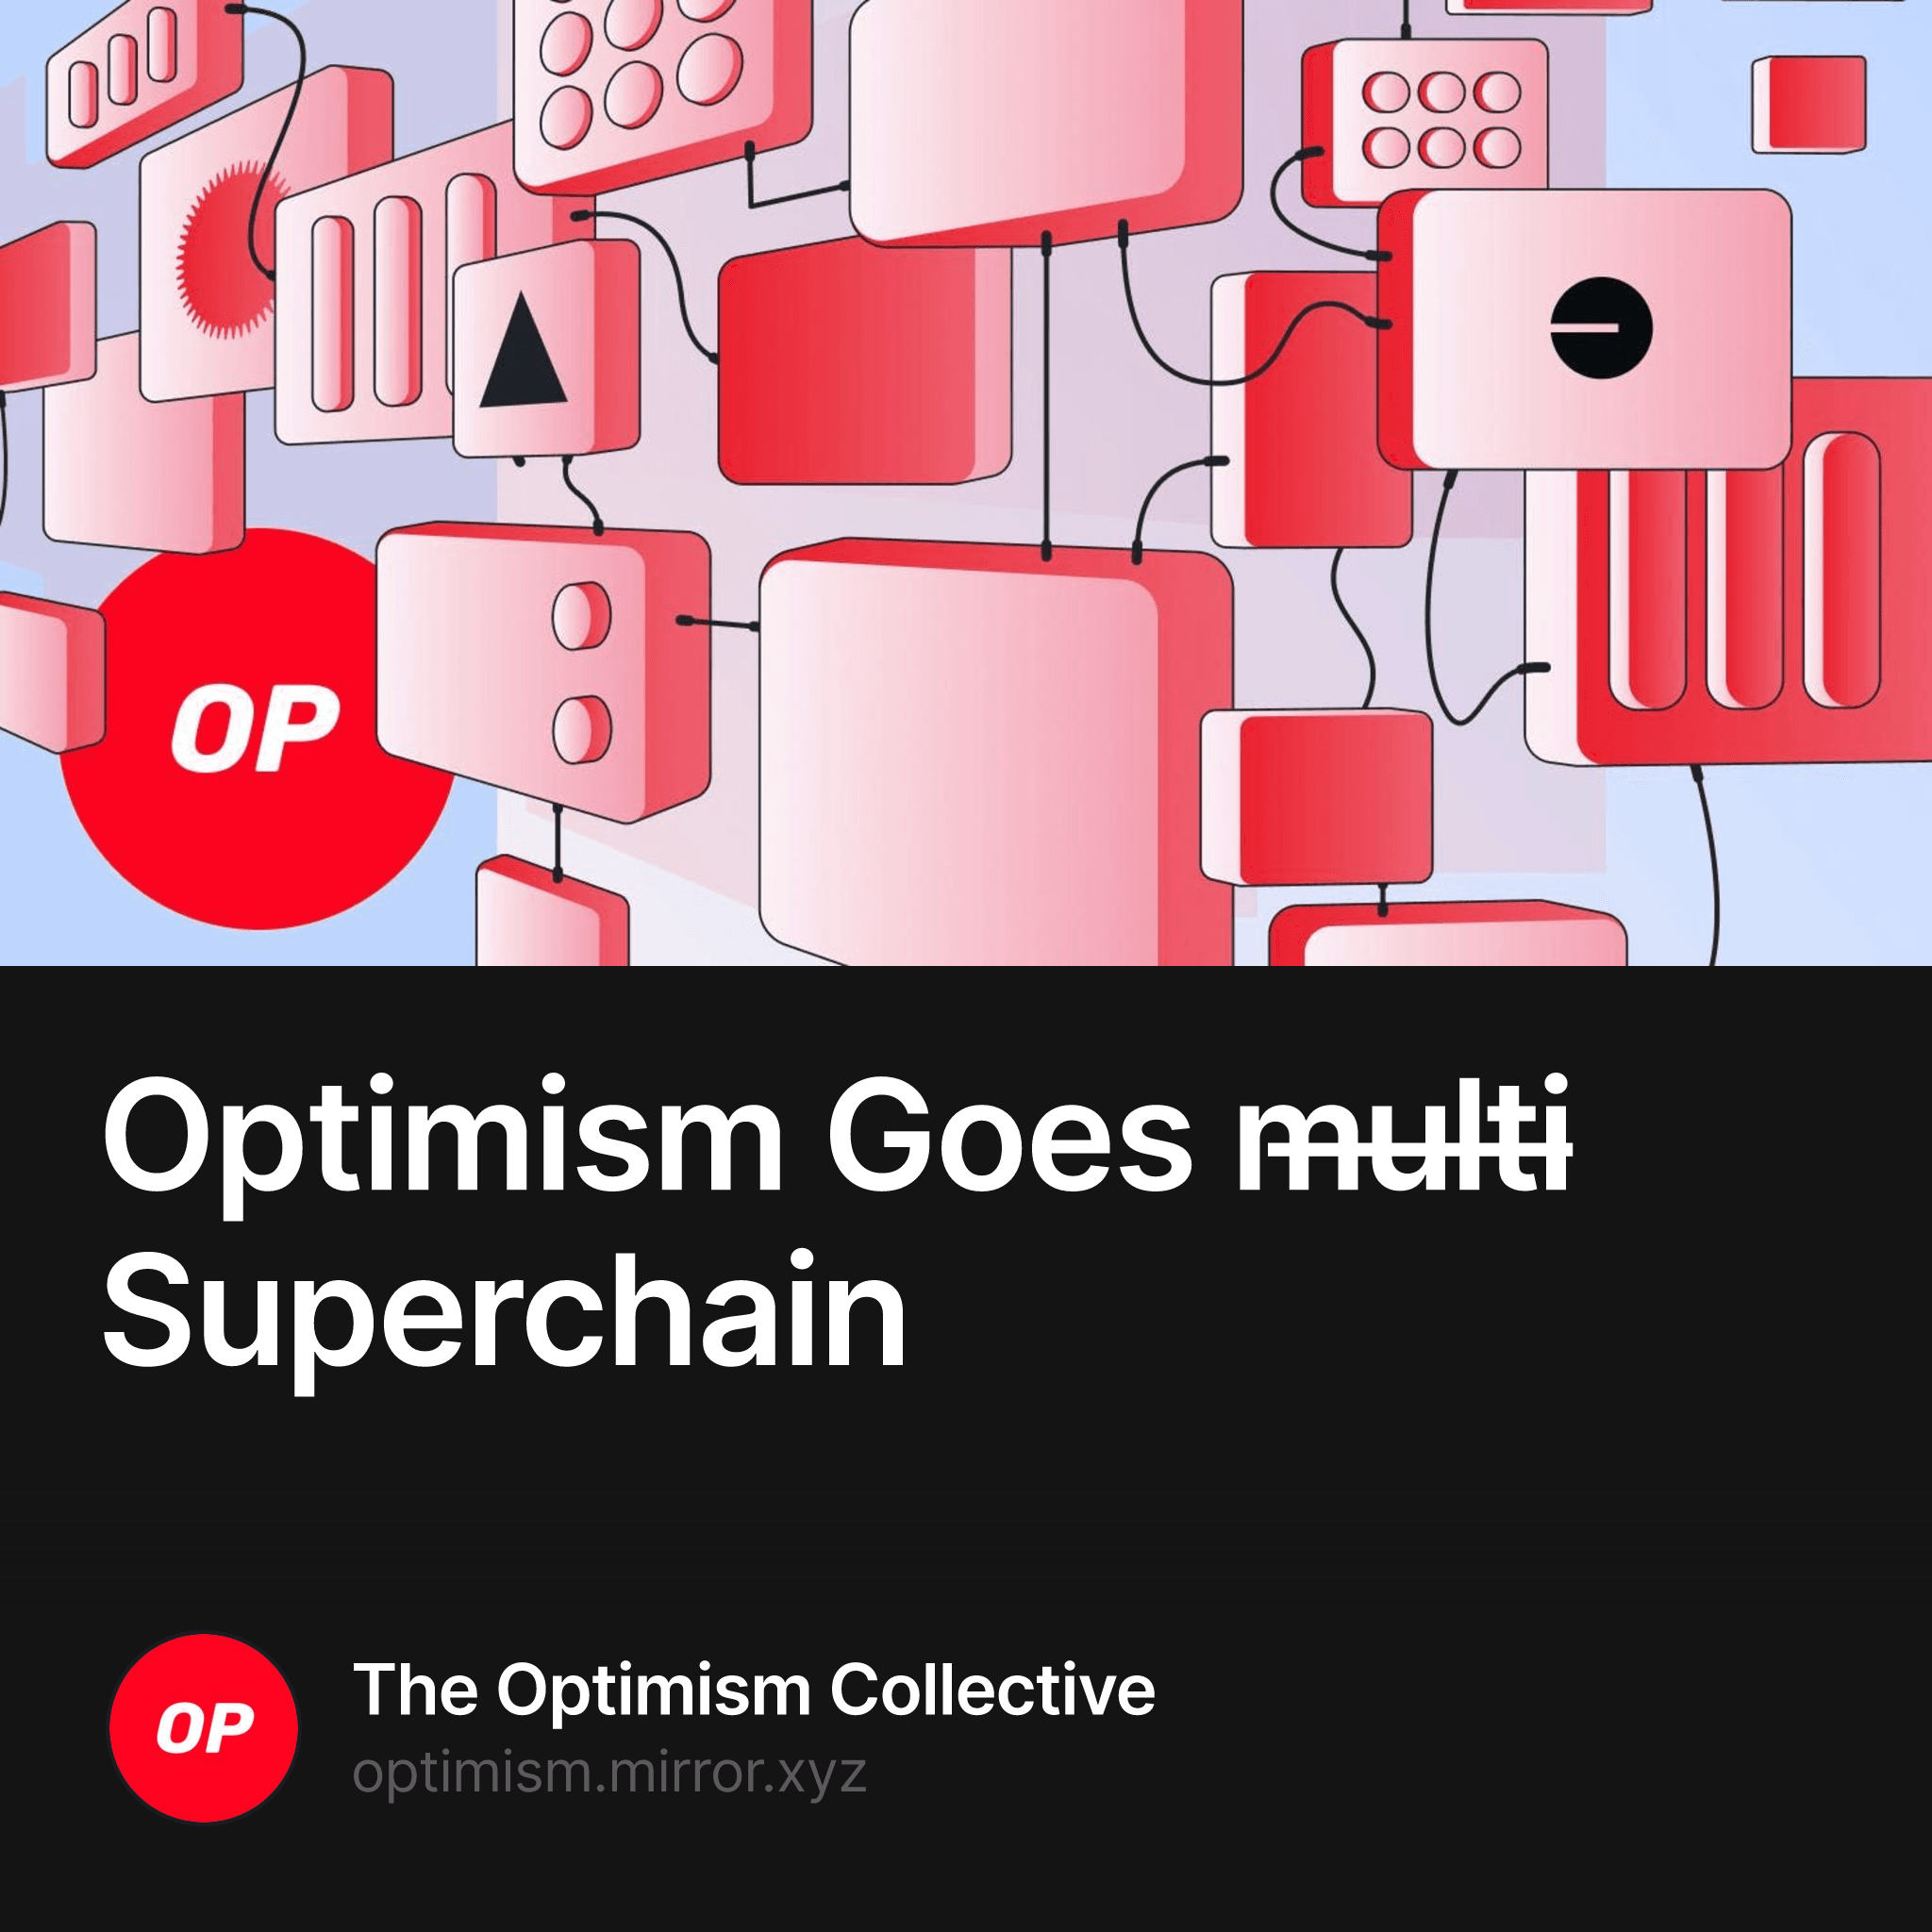 Optimism Goes m̶u̶l̶t̶i̶ Superchain 1/10000